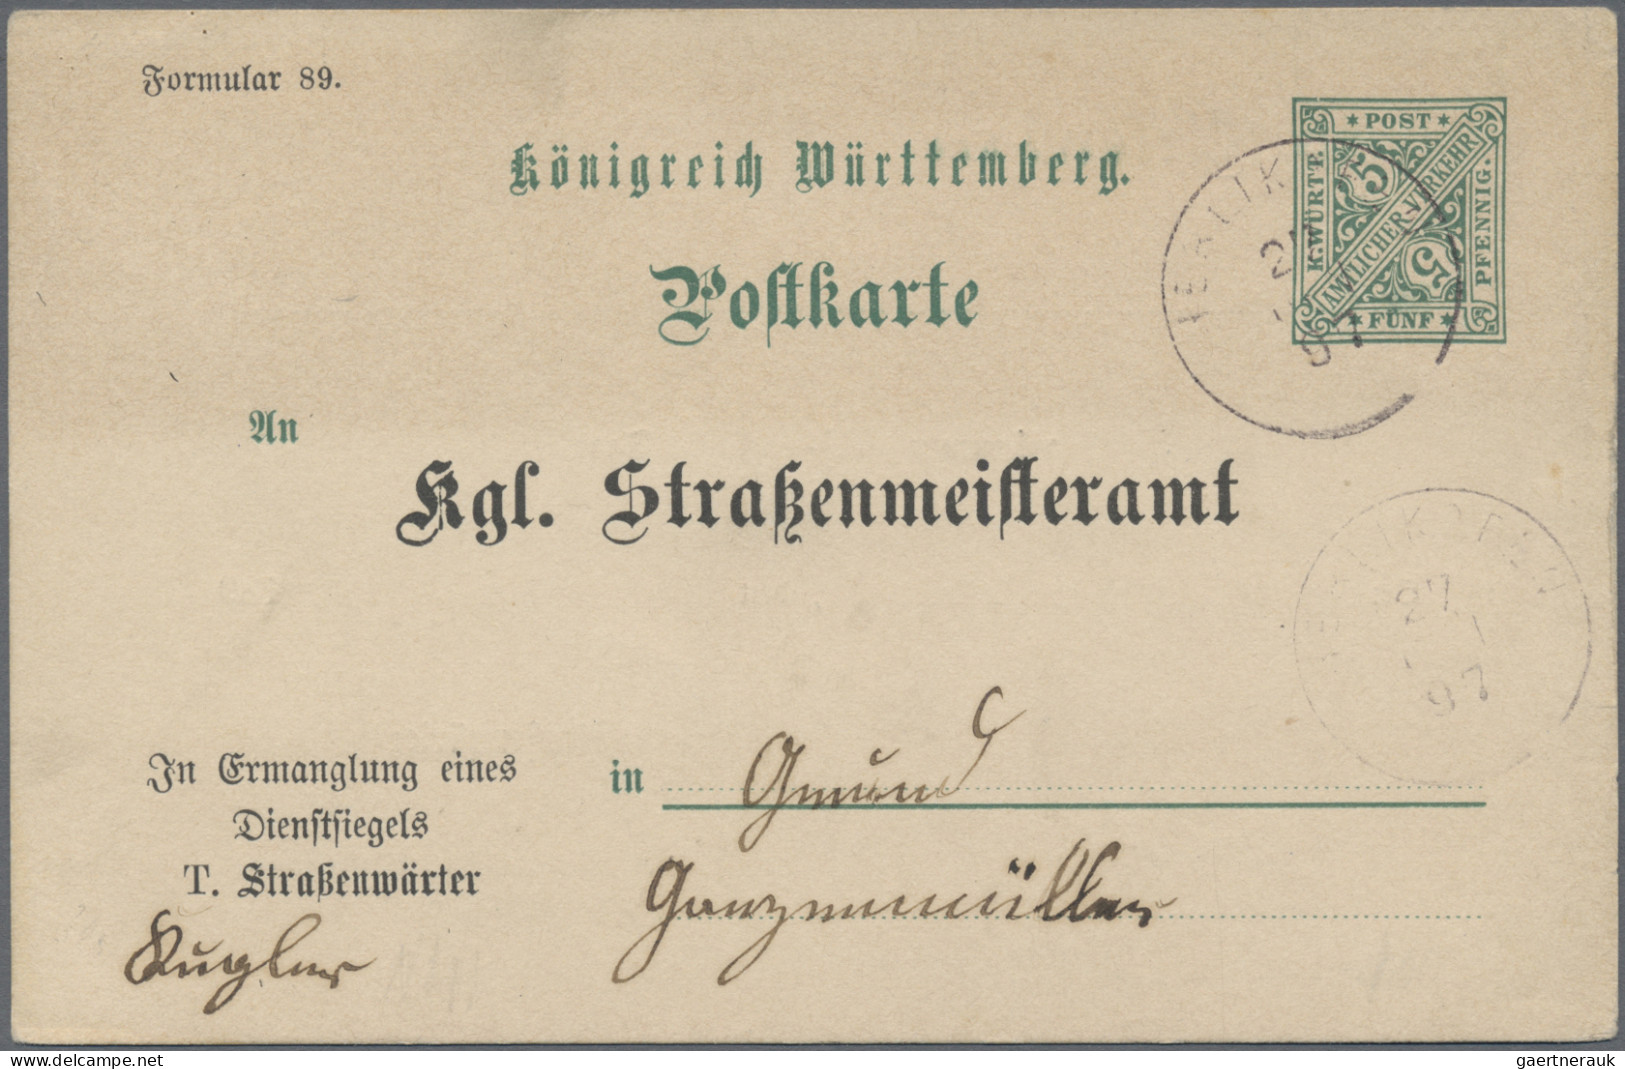 Württemberg - Ganzsachen: 1890/1910 (ca.), Partie von 20 gebrauchten und ungebra